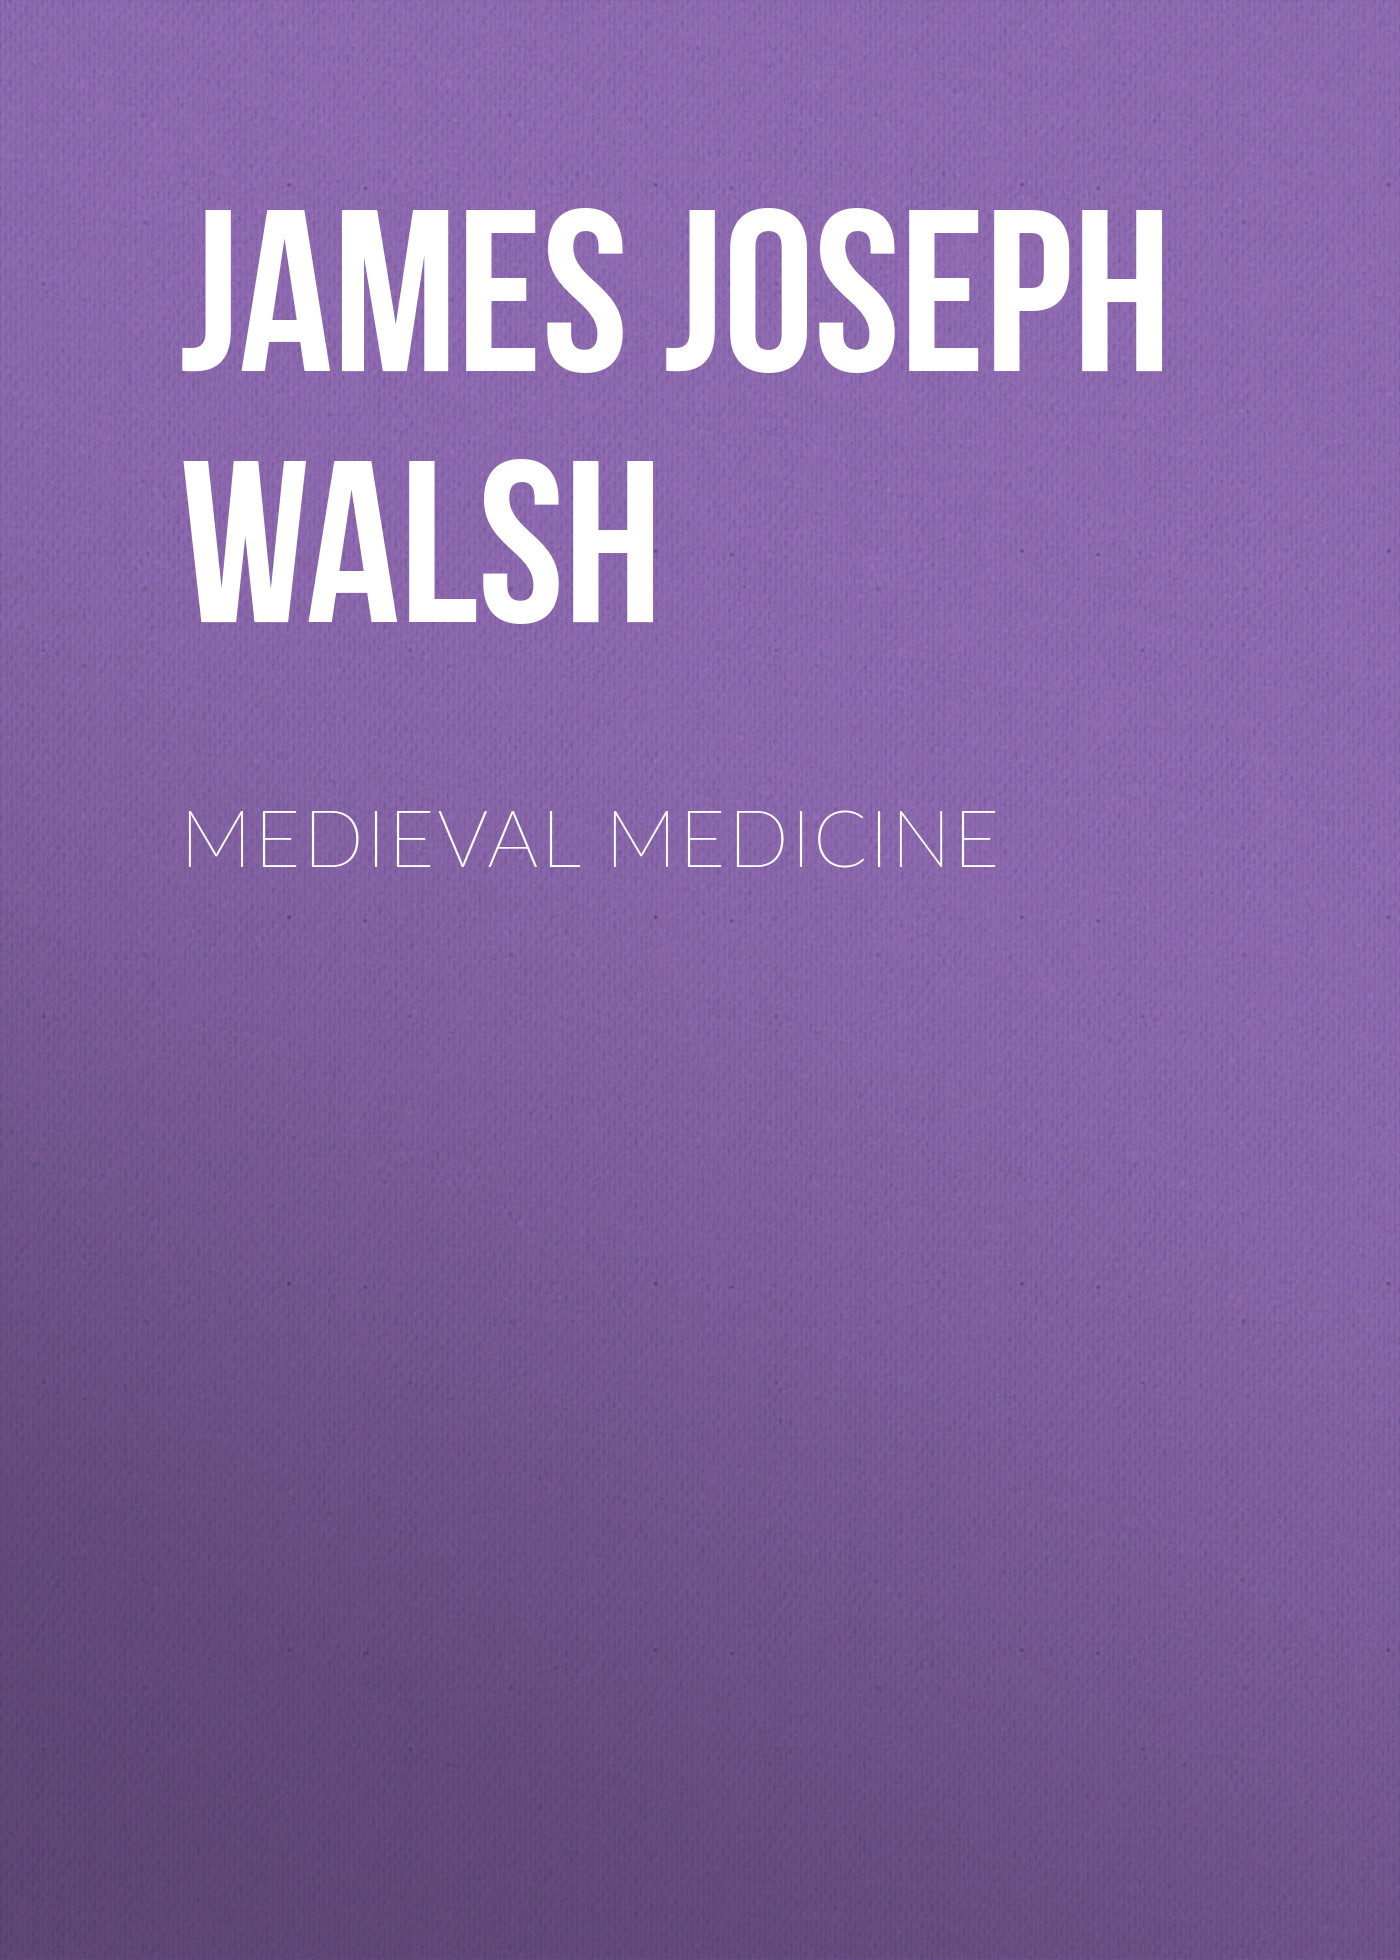 Книга Medieval Medicine из серии , созданная James Walsh, может относится к жанру Зарубежная классика, Медицина, Зарубежная старинная литература. Стоимость электронной книги Medieval Medicine с идентификатором 34282824 составляет 0 руб.